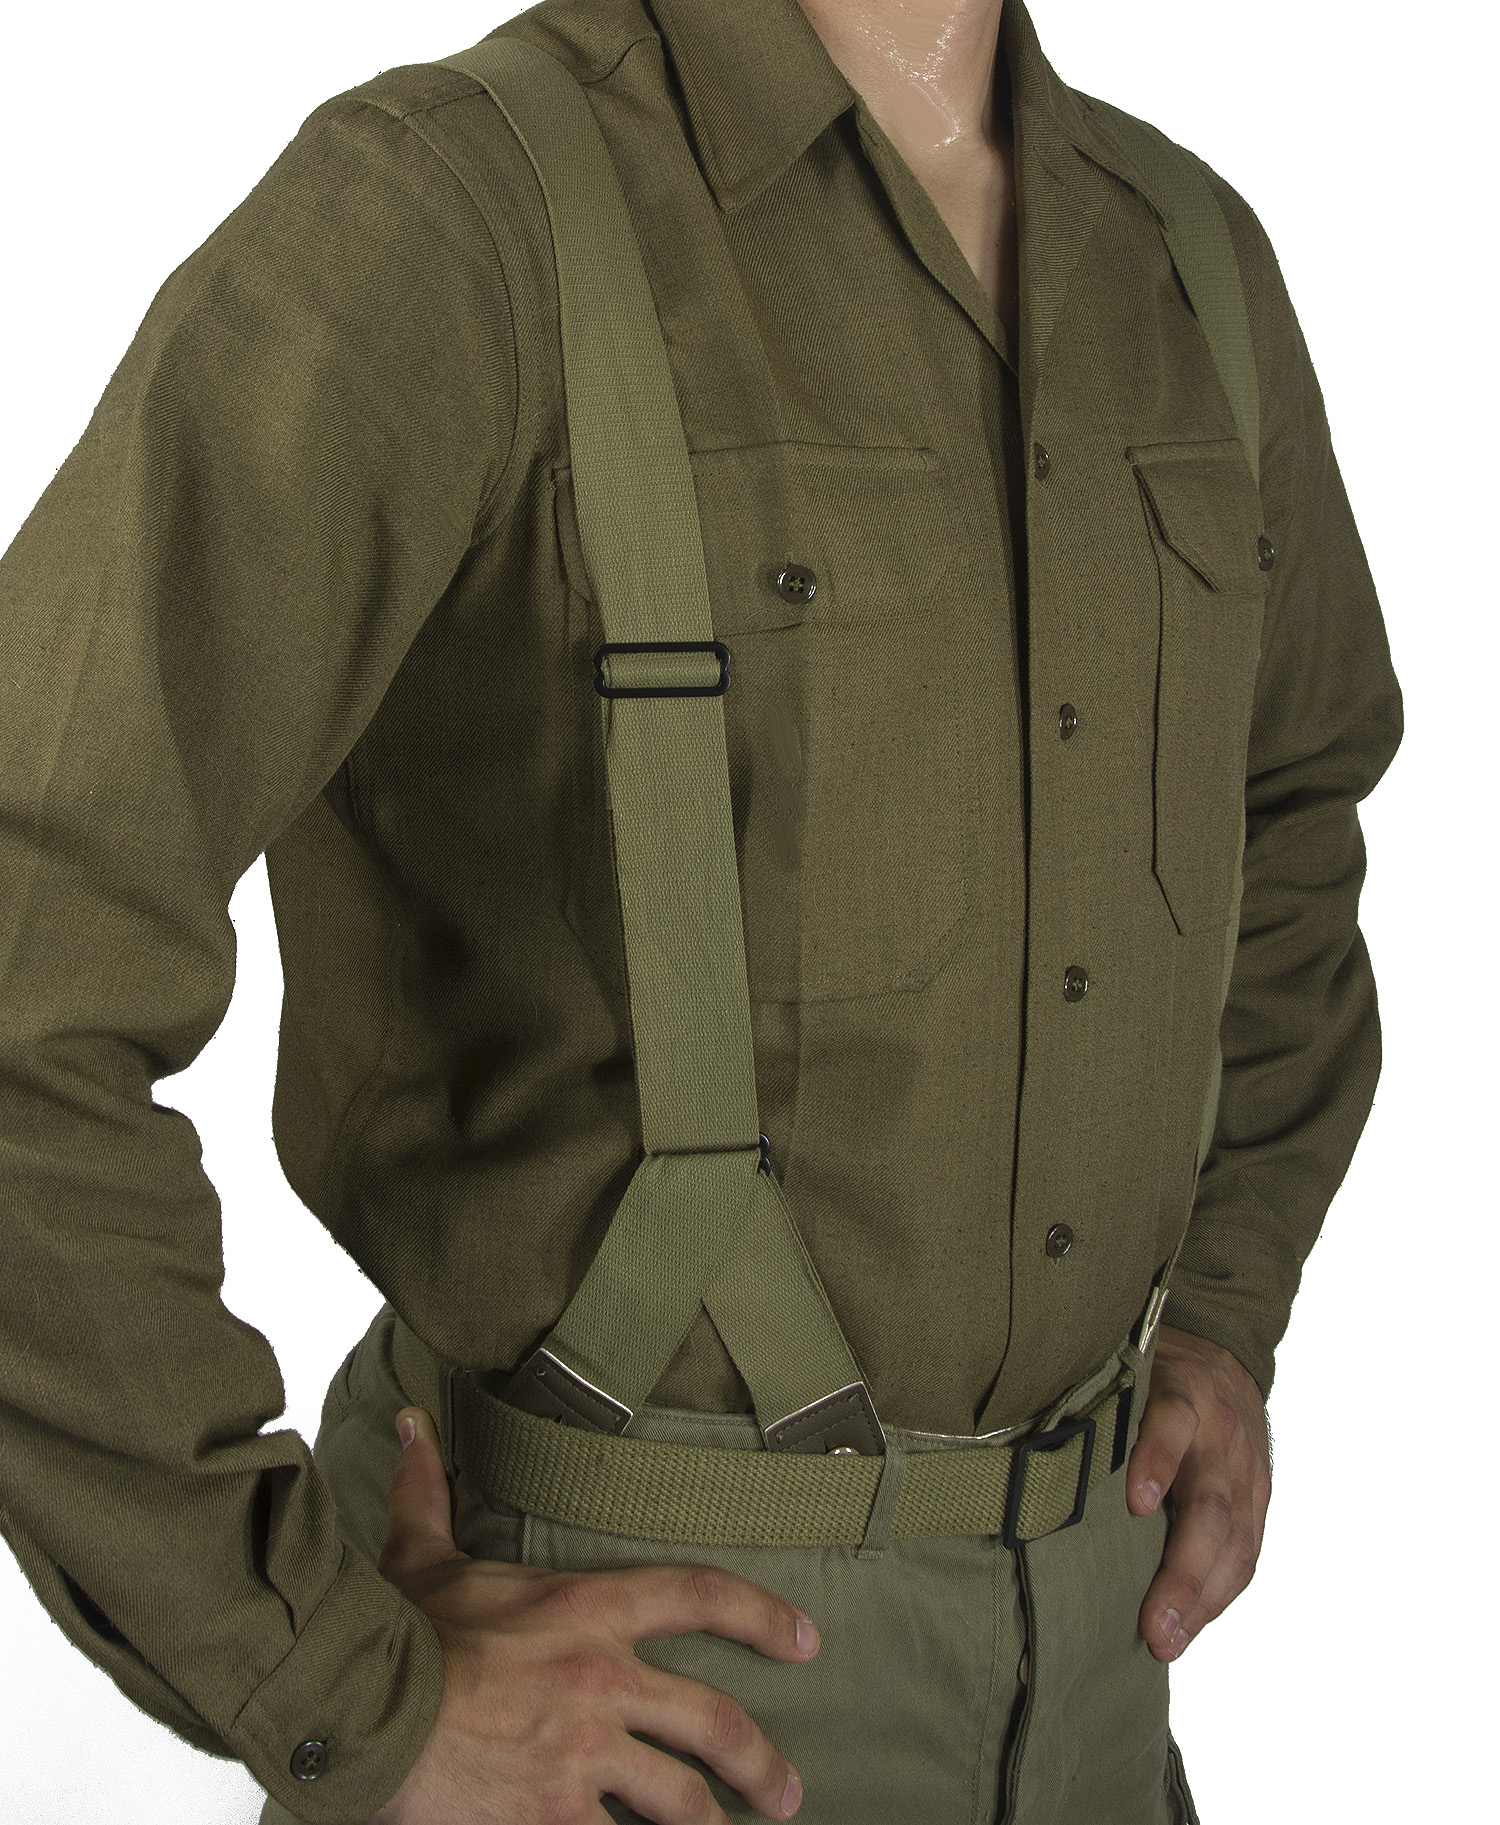 US braces feldhose WW2  field trousers braces Army Bretelle hosentrager 